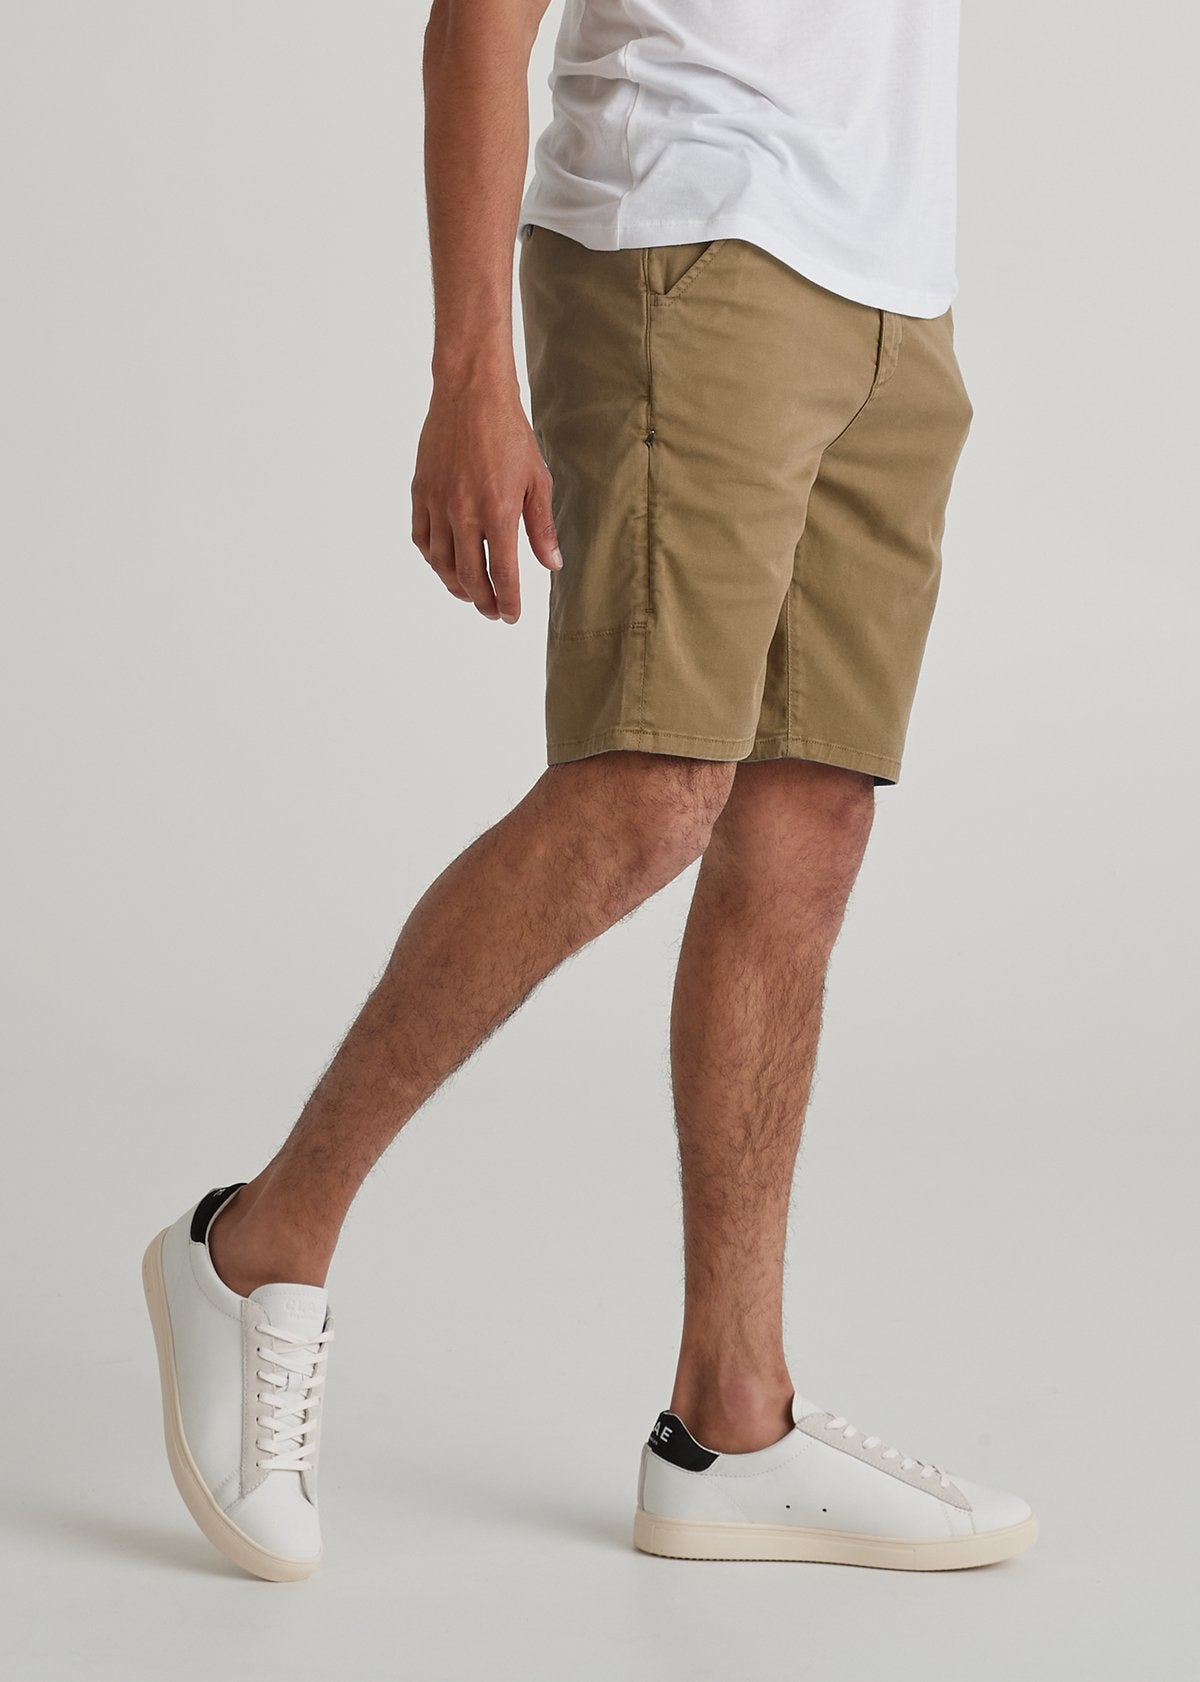 Mens light brown lightweight shorts side